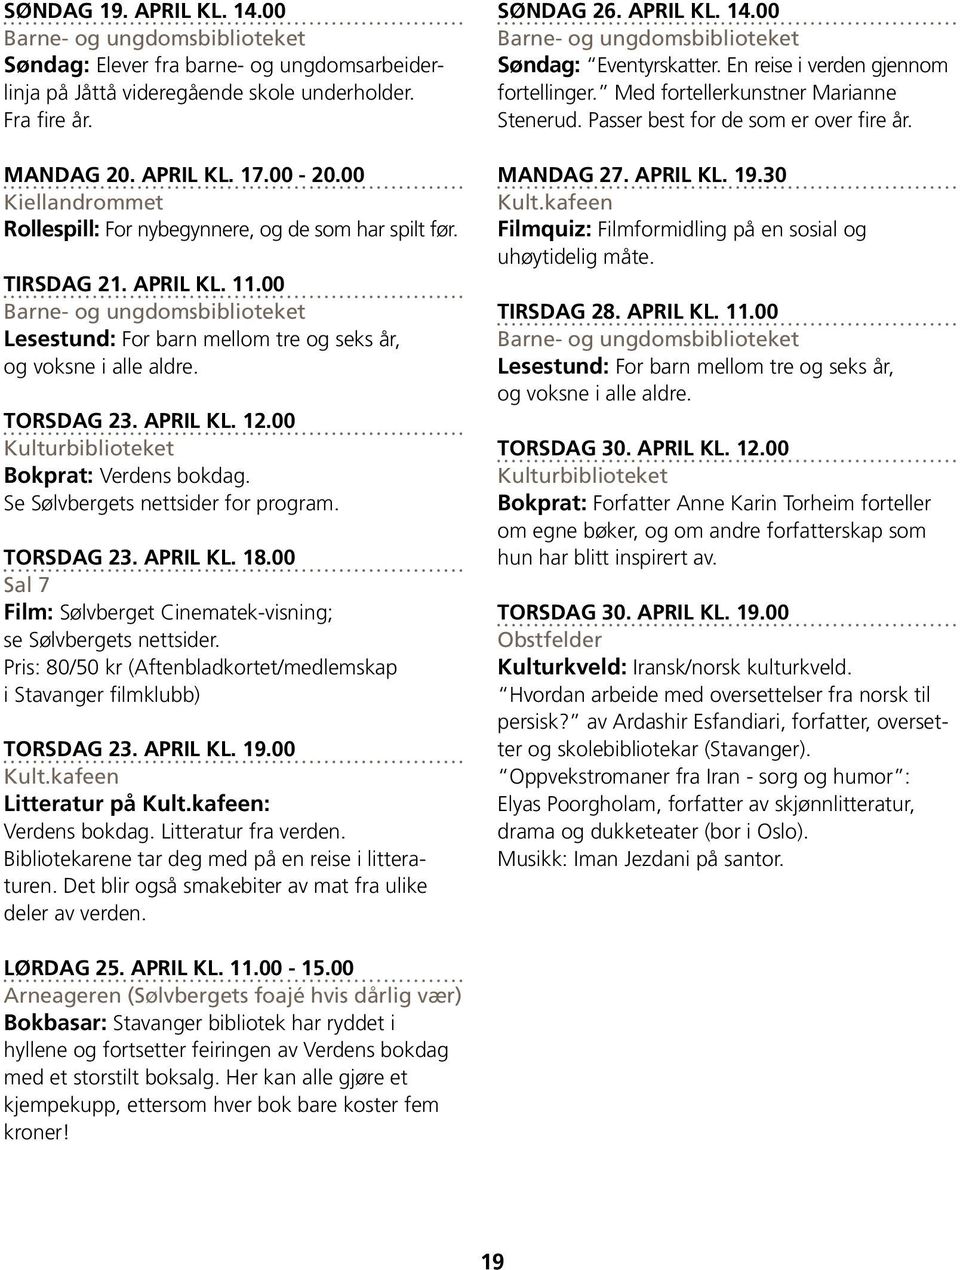 00 Film: Sølvberget Cinematek-visning; se Sølvbergets nettsider. Torsdag 23. april kl. 19.00 Litteratur på : Verdens bokdag. Litteratur fra verden.